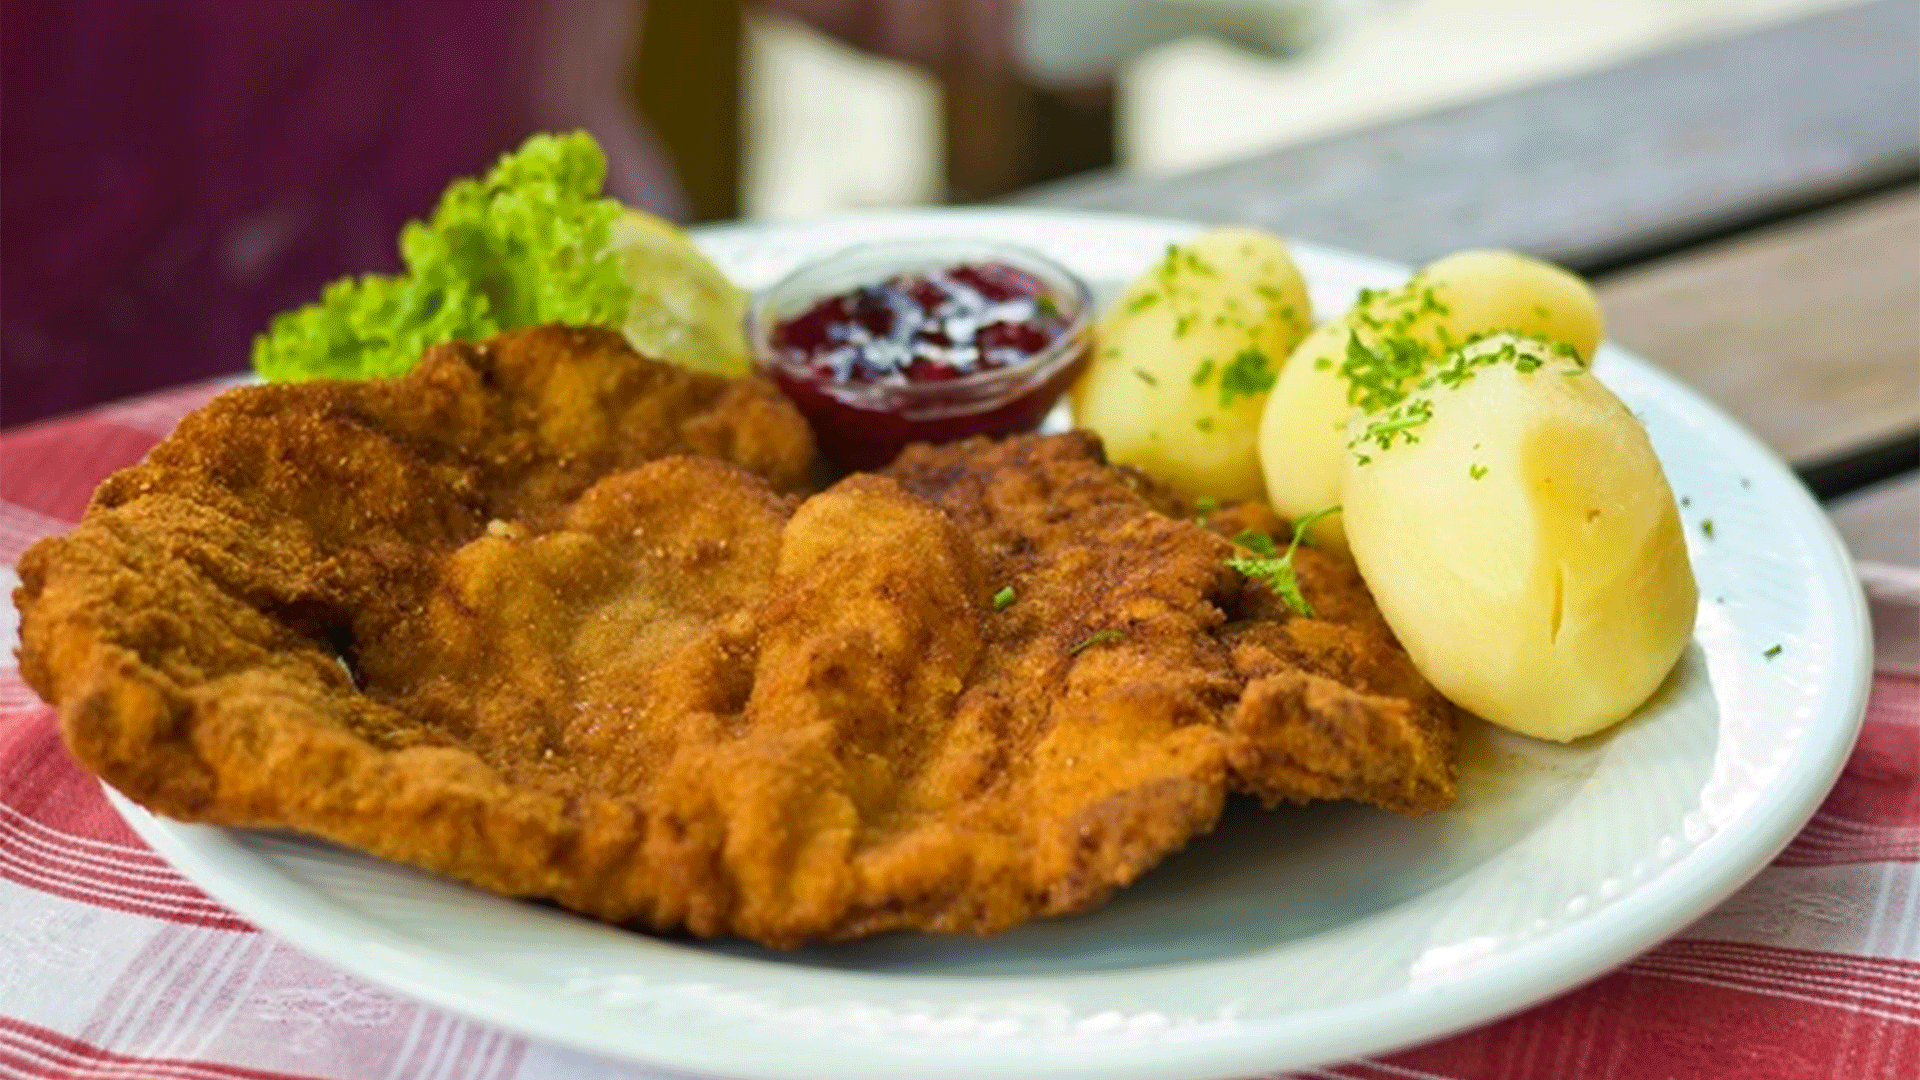 austriawiener-schnitzel-potatoes-mixed-salad-cranberry-jam